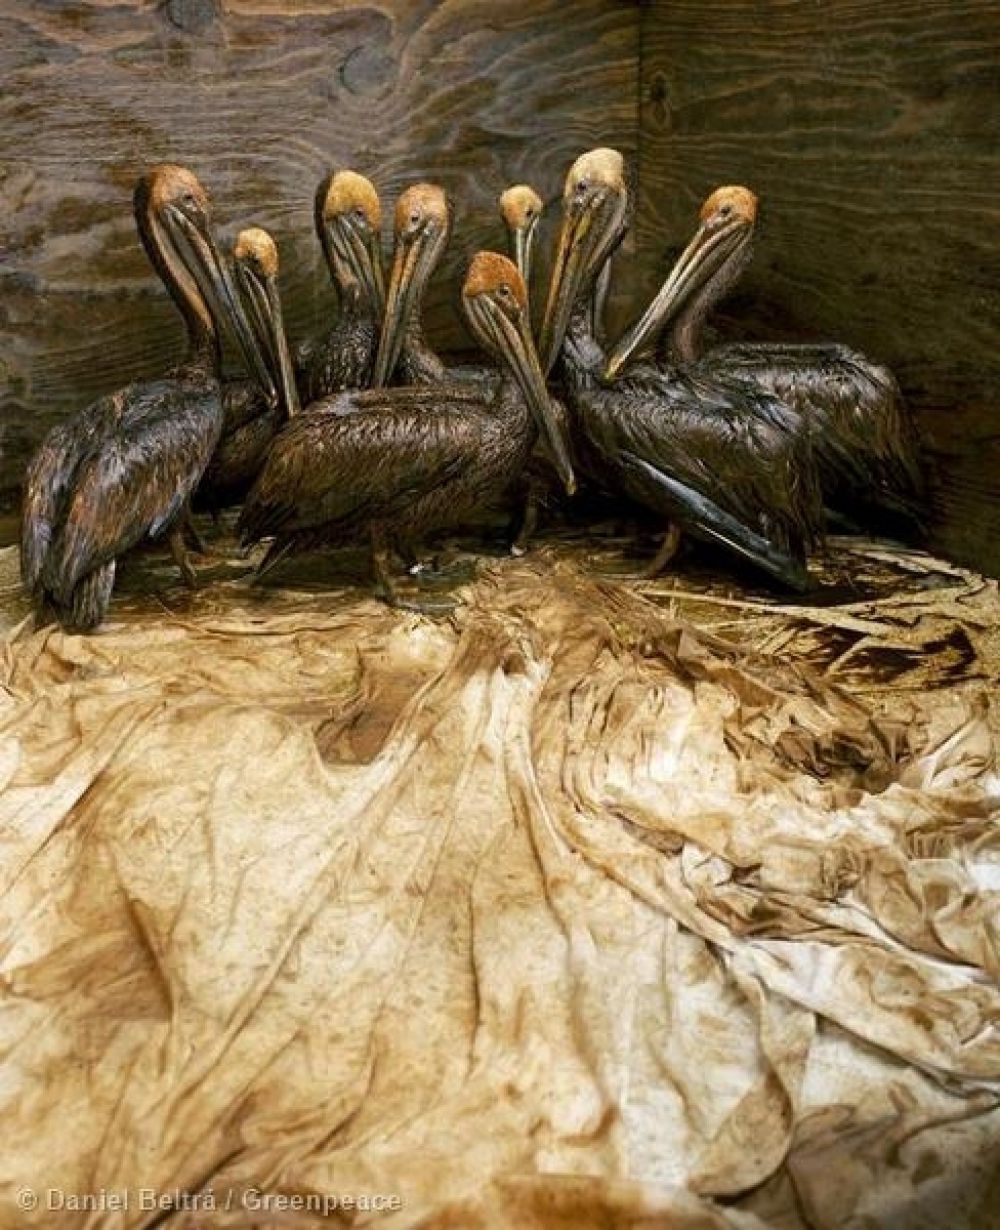 В 2010 году в Мексиканском заливе произошла одна из самых крупных техногенных катастроф в истории человечества. Это снимок из Международного научно-исследовательского центра Форт Джексон: пеликаны в специальном загоне ждут, когда волонтёры центра очистят их от нефти. 